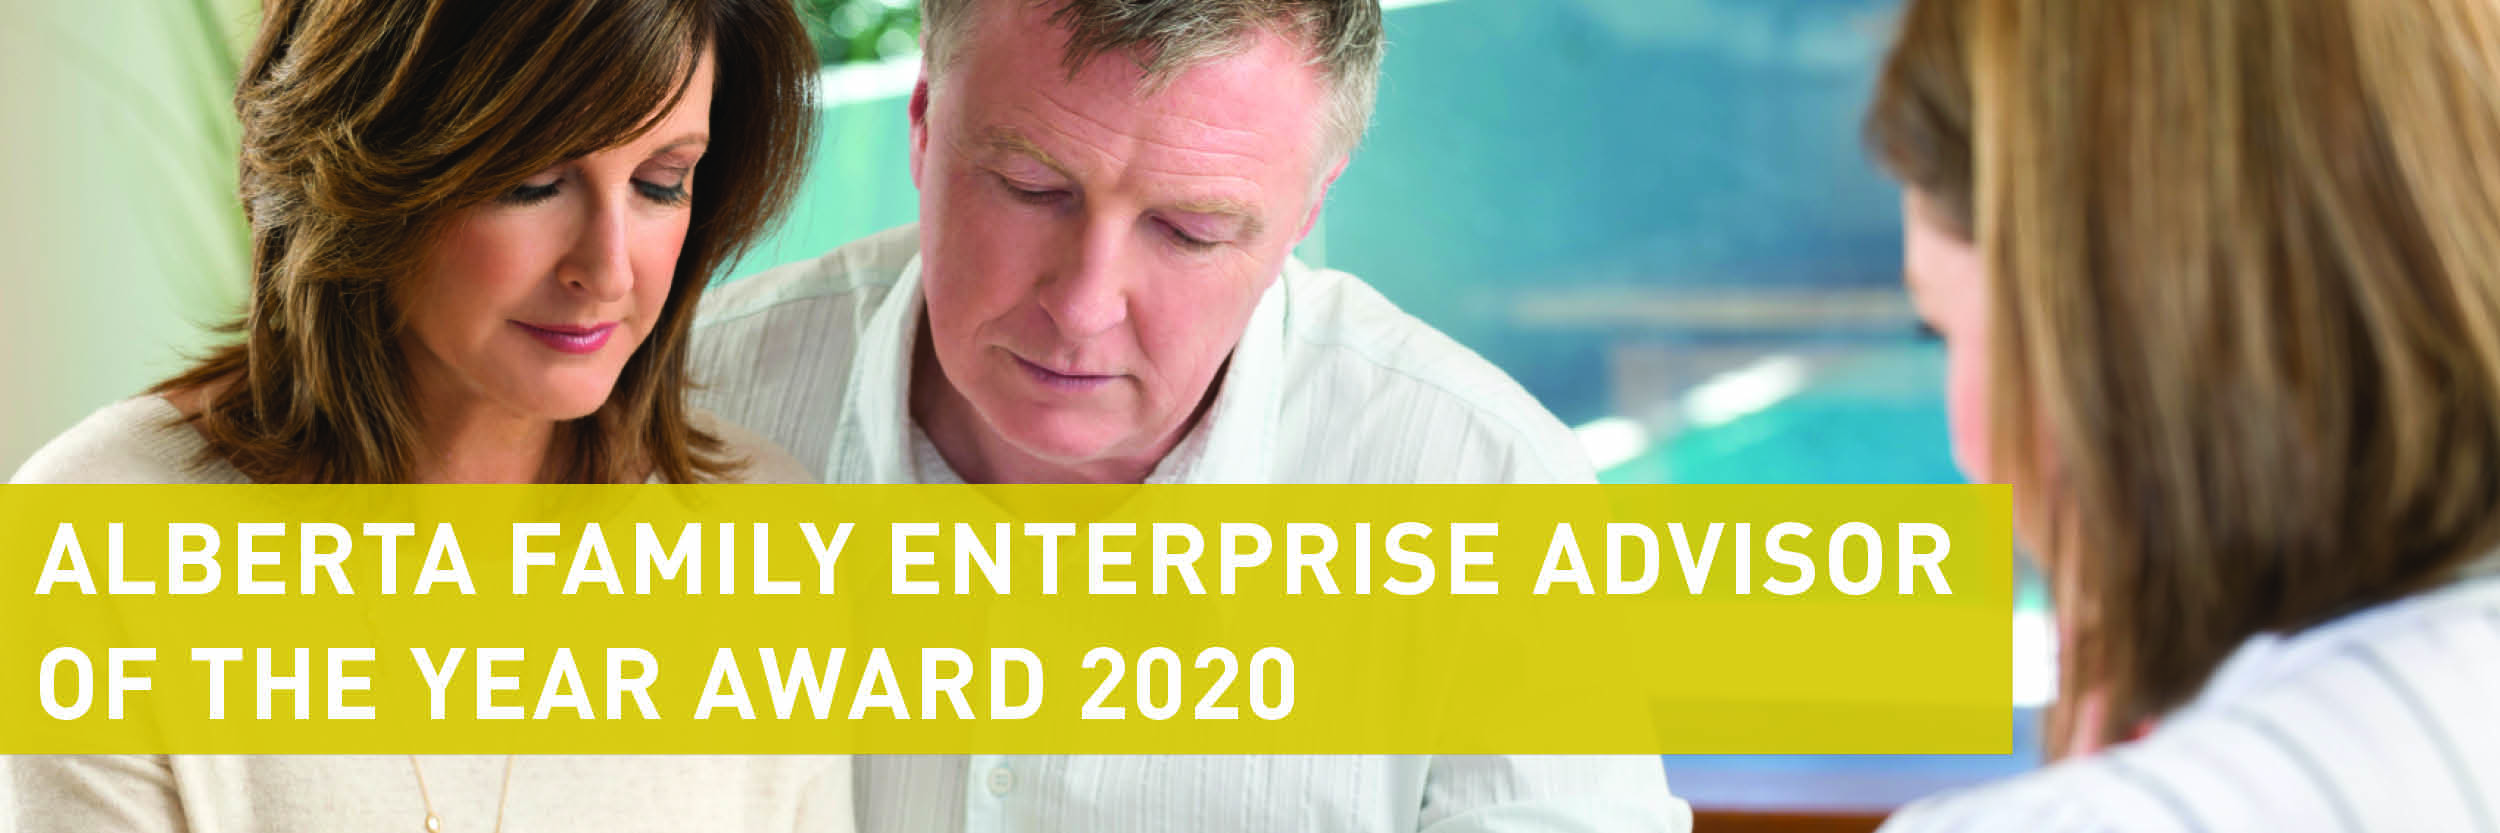 Family Enterprise Advisor of the Year 2020 Award